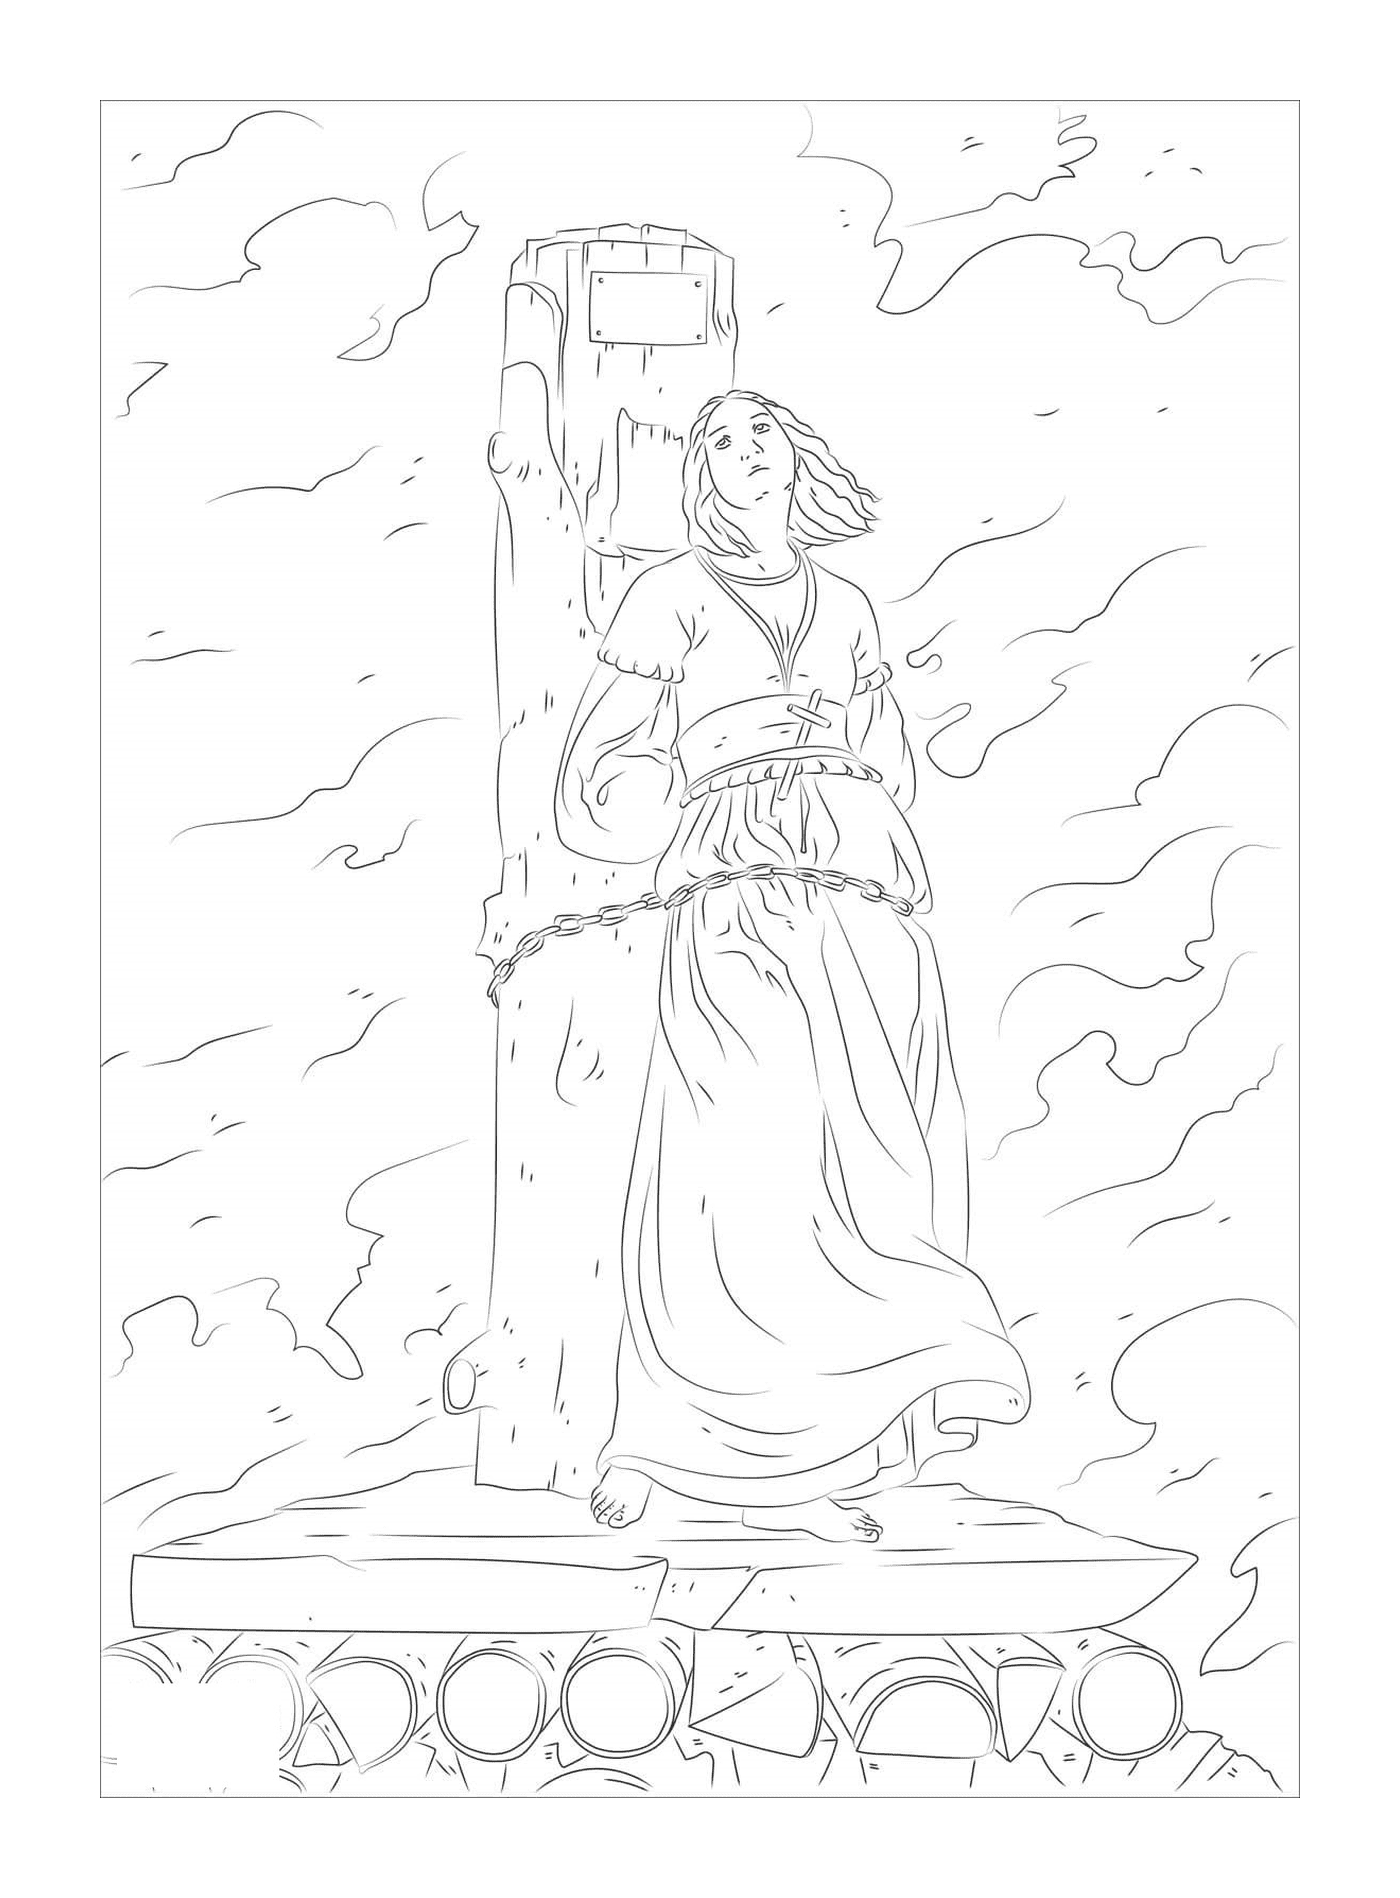  Johanna von Arc brannte auf dem Pfahl 